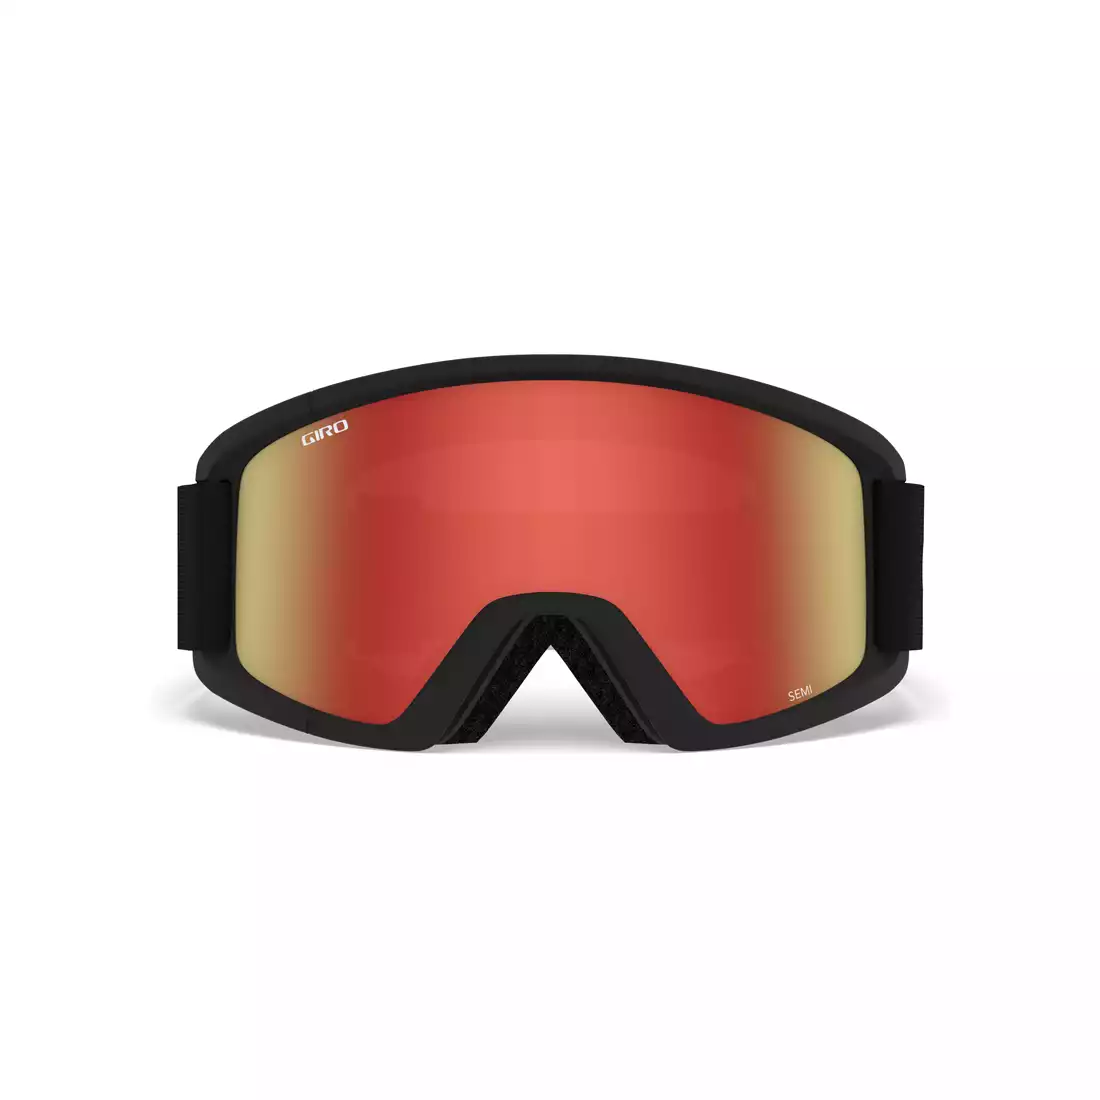 Męskie gogle narciarskie / snowboardowe GIRO SEMI BLACK CORE GR-7083510 